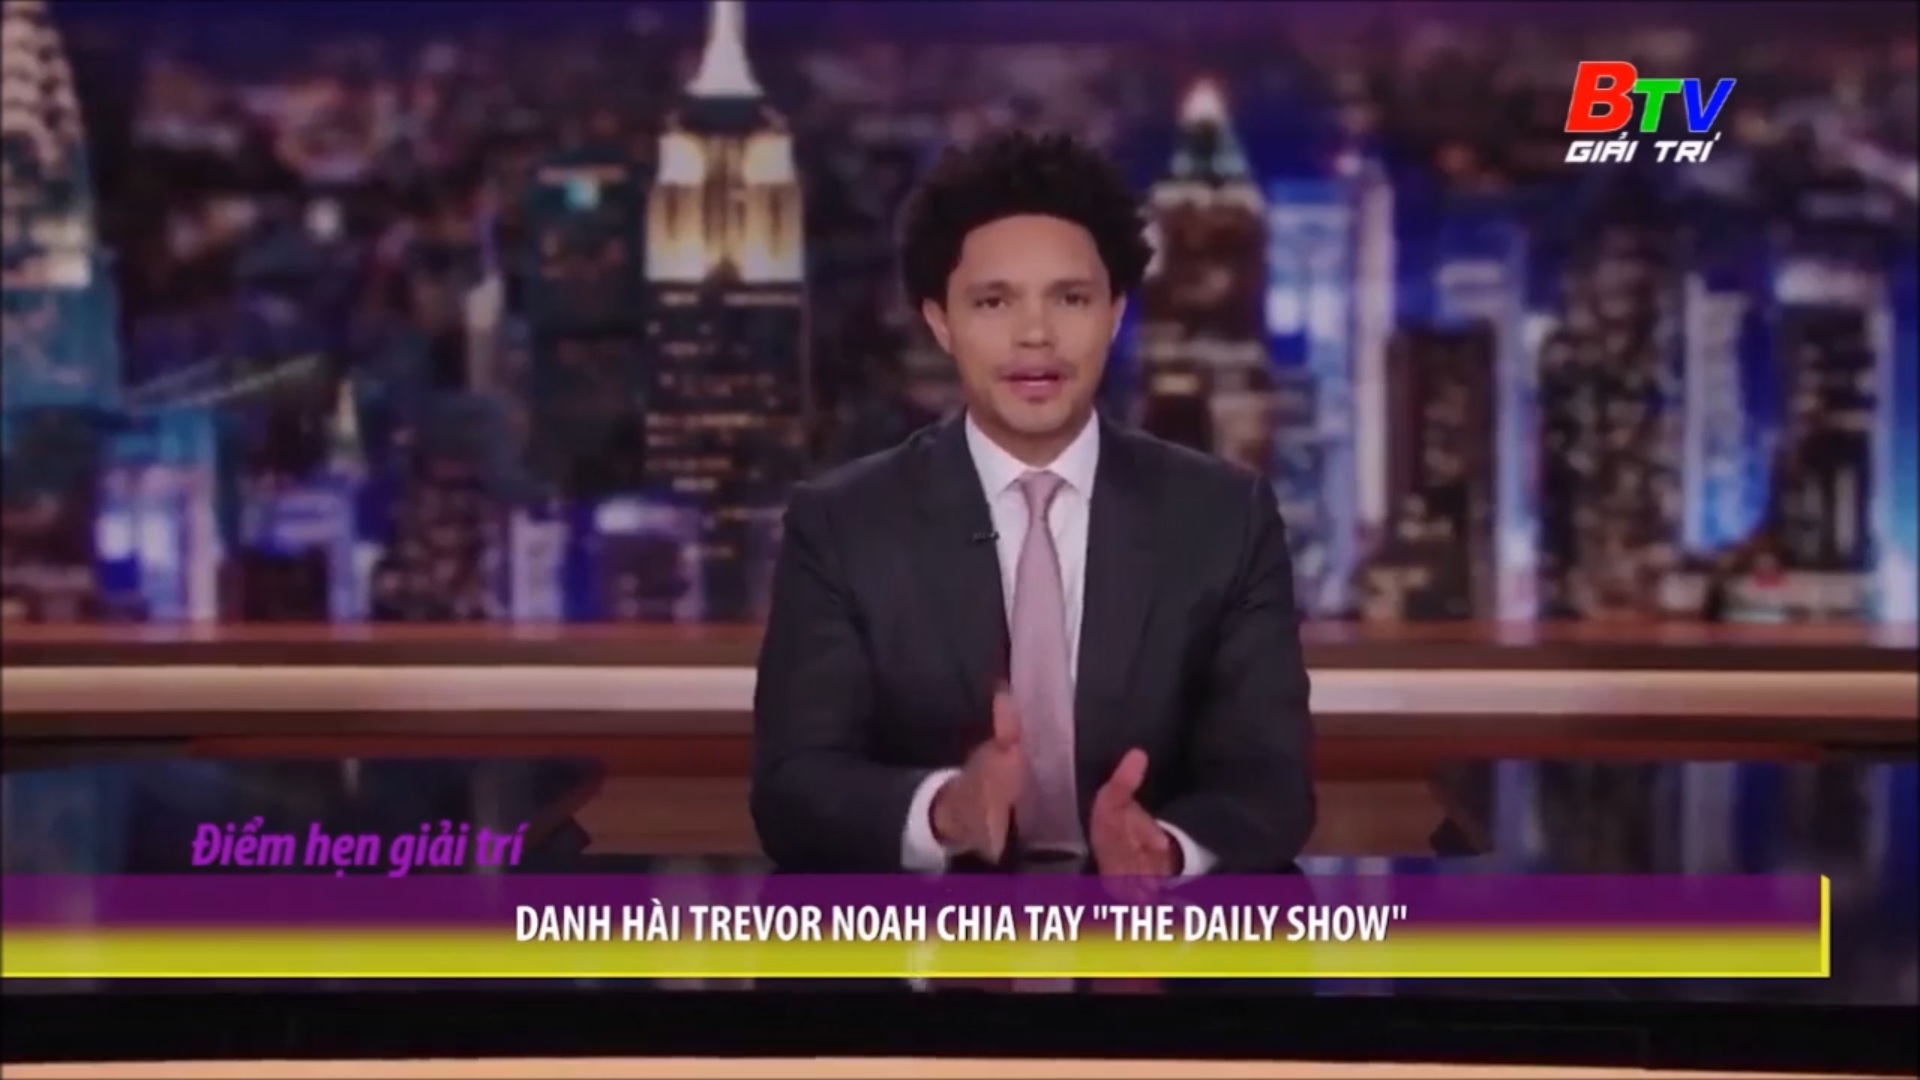 Danh hài Trevor Noah chia tay “The Daily Show”